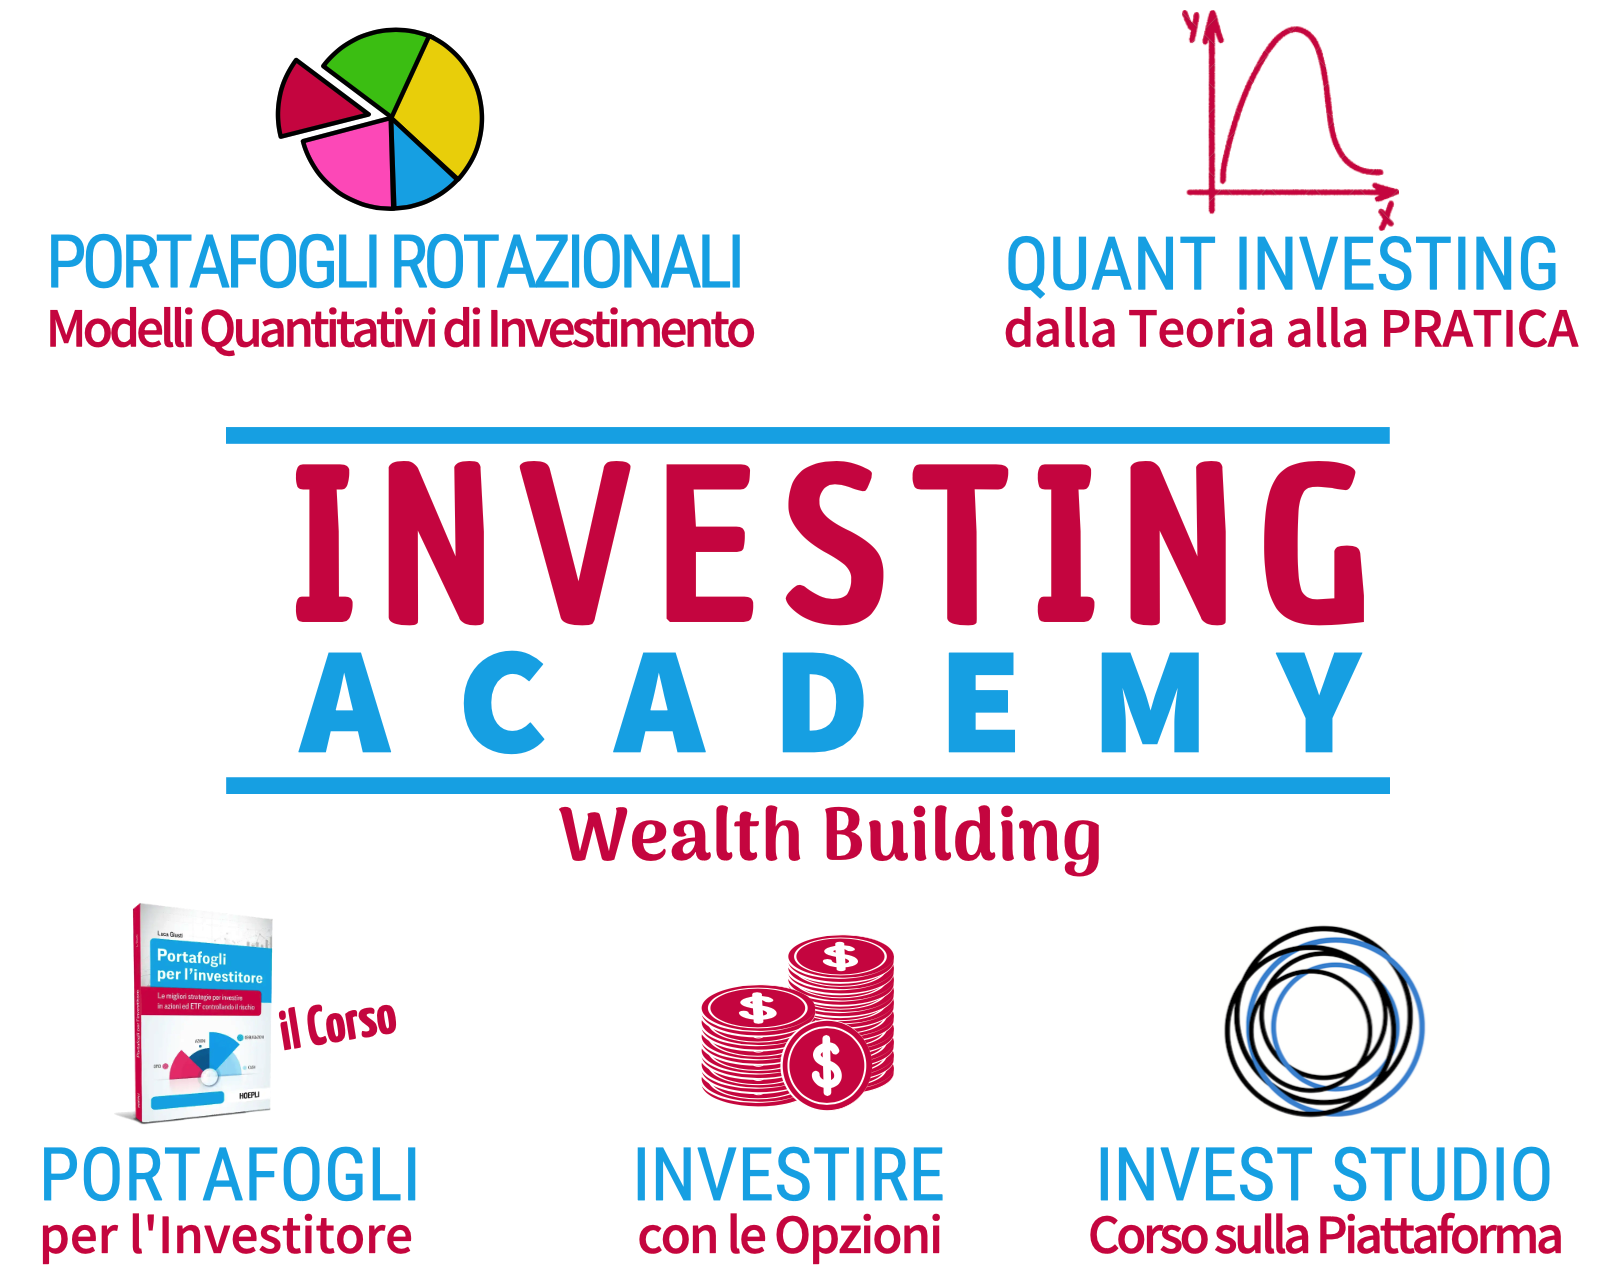 QTLAB corsi trading wealth building, corso investimento, corso trading azioni, opzioni su azioni, corso per investire in azioni, corso di trading sulle azioni